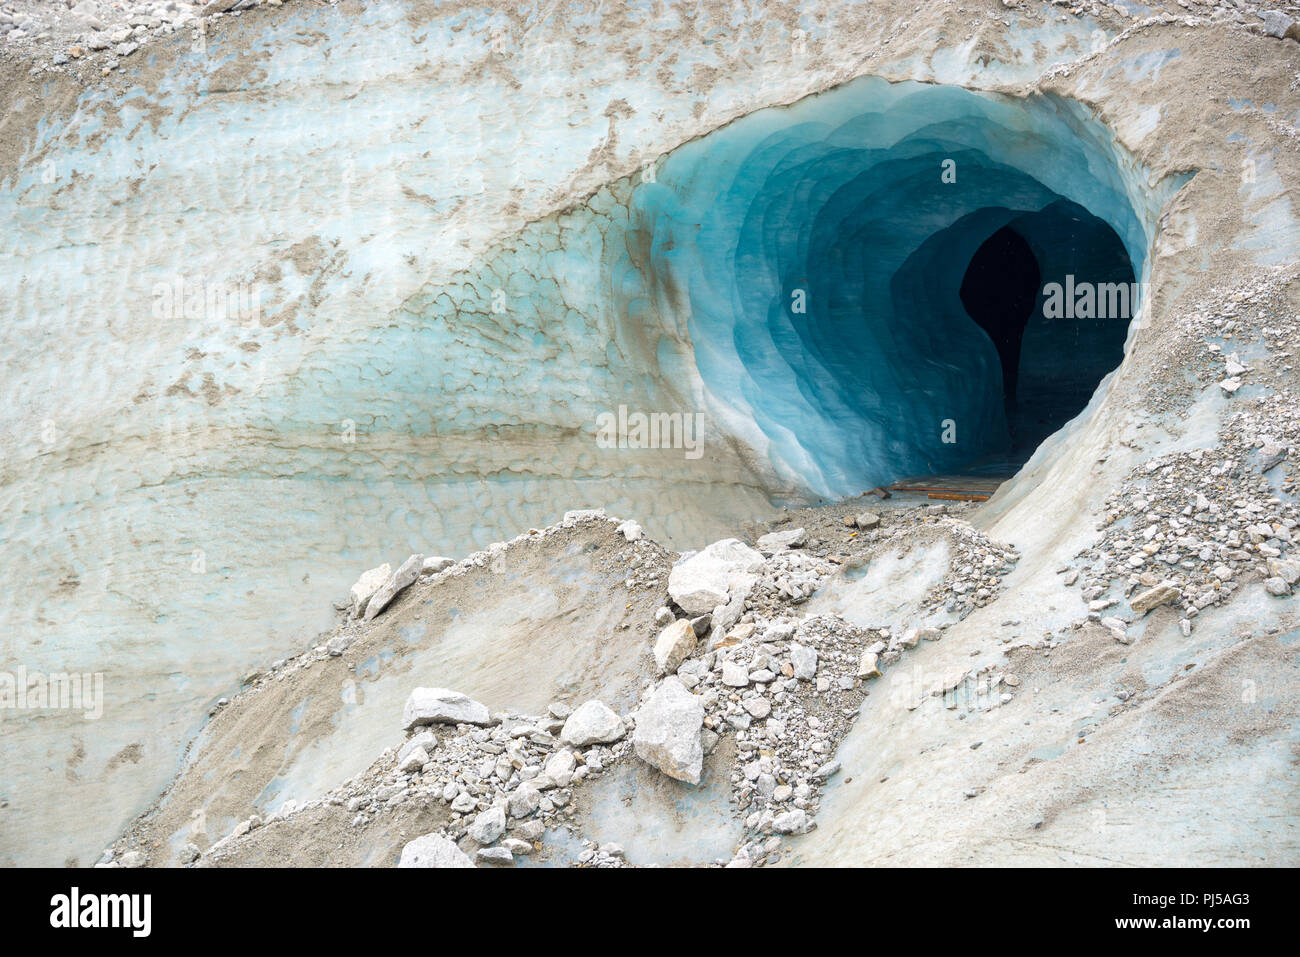 Entrée d'une grotte de glace dans le glacier Mer de Glace à Chamonix, Massif du Mont Blanc, les Alpes, France Banque D'Images